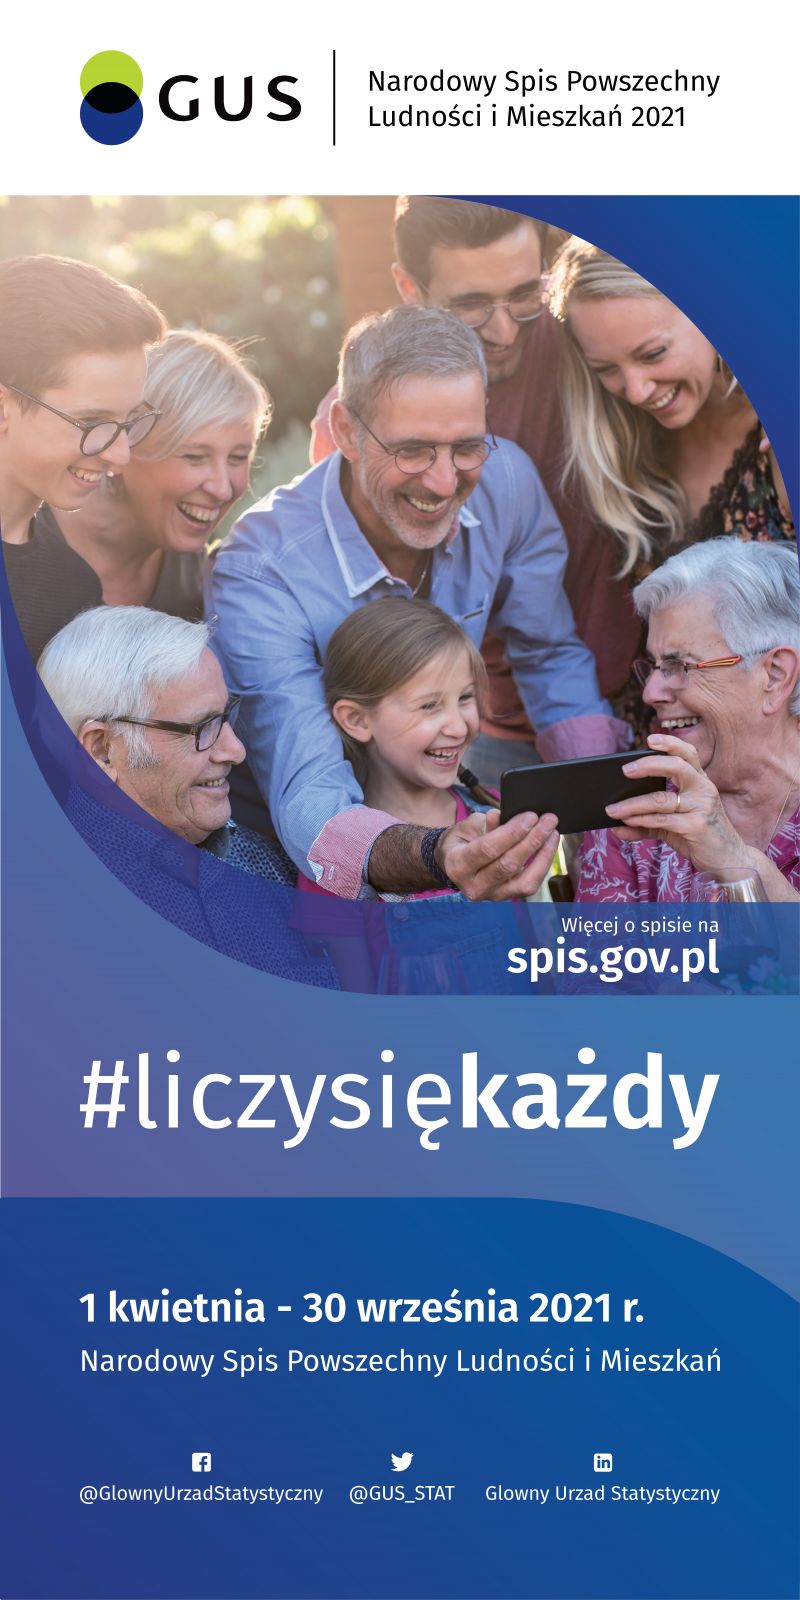 1-kwietnia-30 września 2021 r. W tym czasie trwa Narodowy Spis Powszechny Ludności i Mieszkań. Więcej o spisie na spis.gov.pl